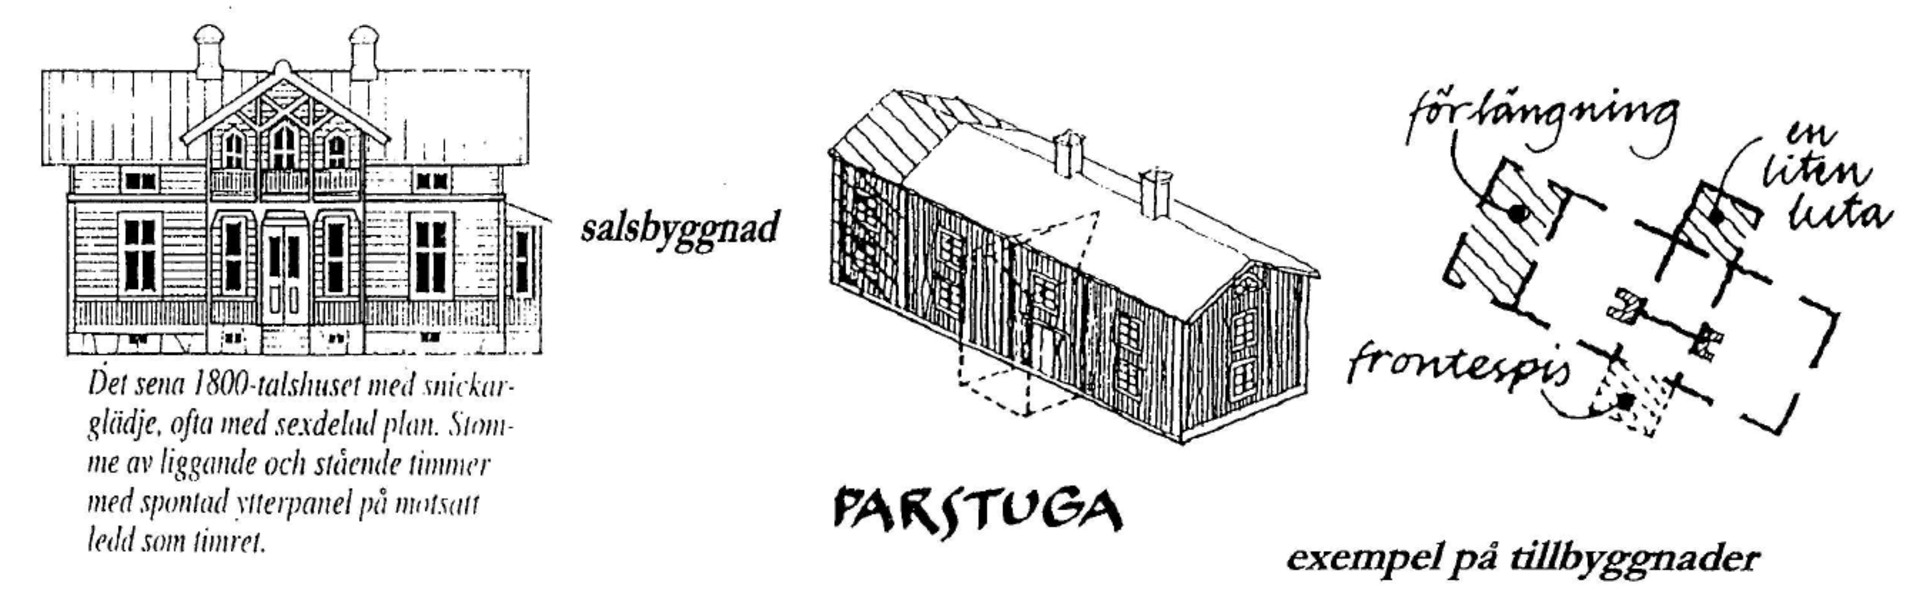 Figur med skisser på olika typer av typiska småländska hustyper.